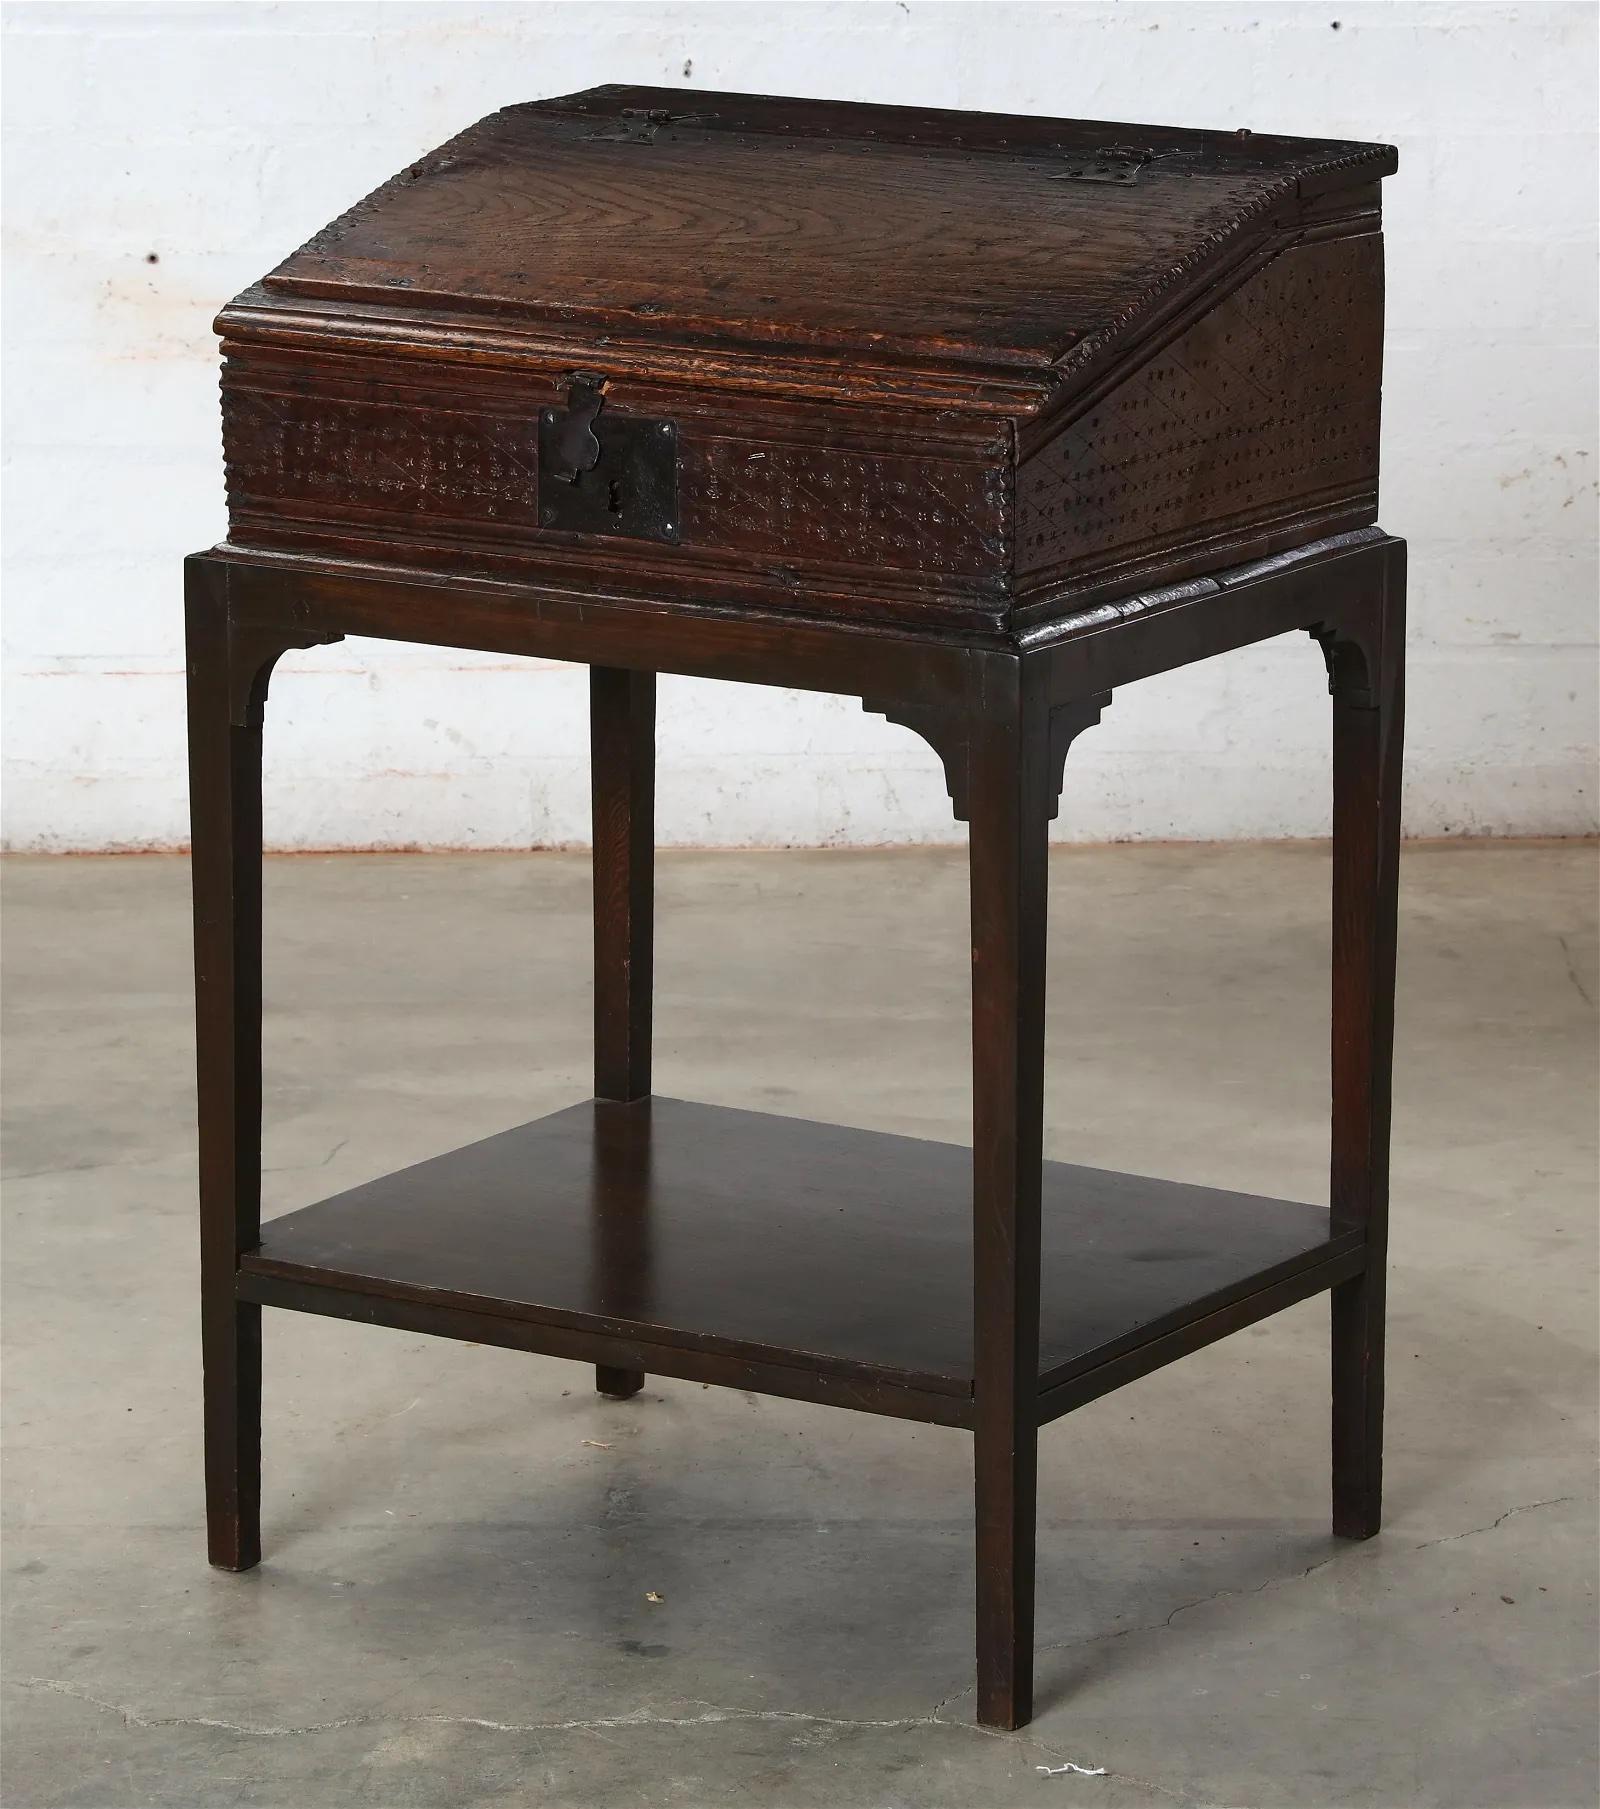 Fino al XVIII secolo Antico scrittoio giacobiano intagliato a mano in Oak con fronte inclinato, inizio XVII secolo in vendita